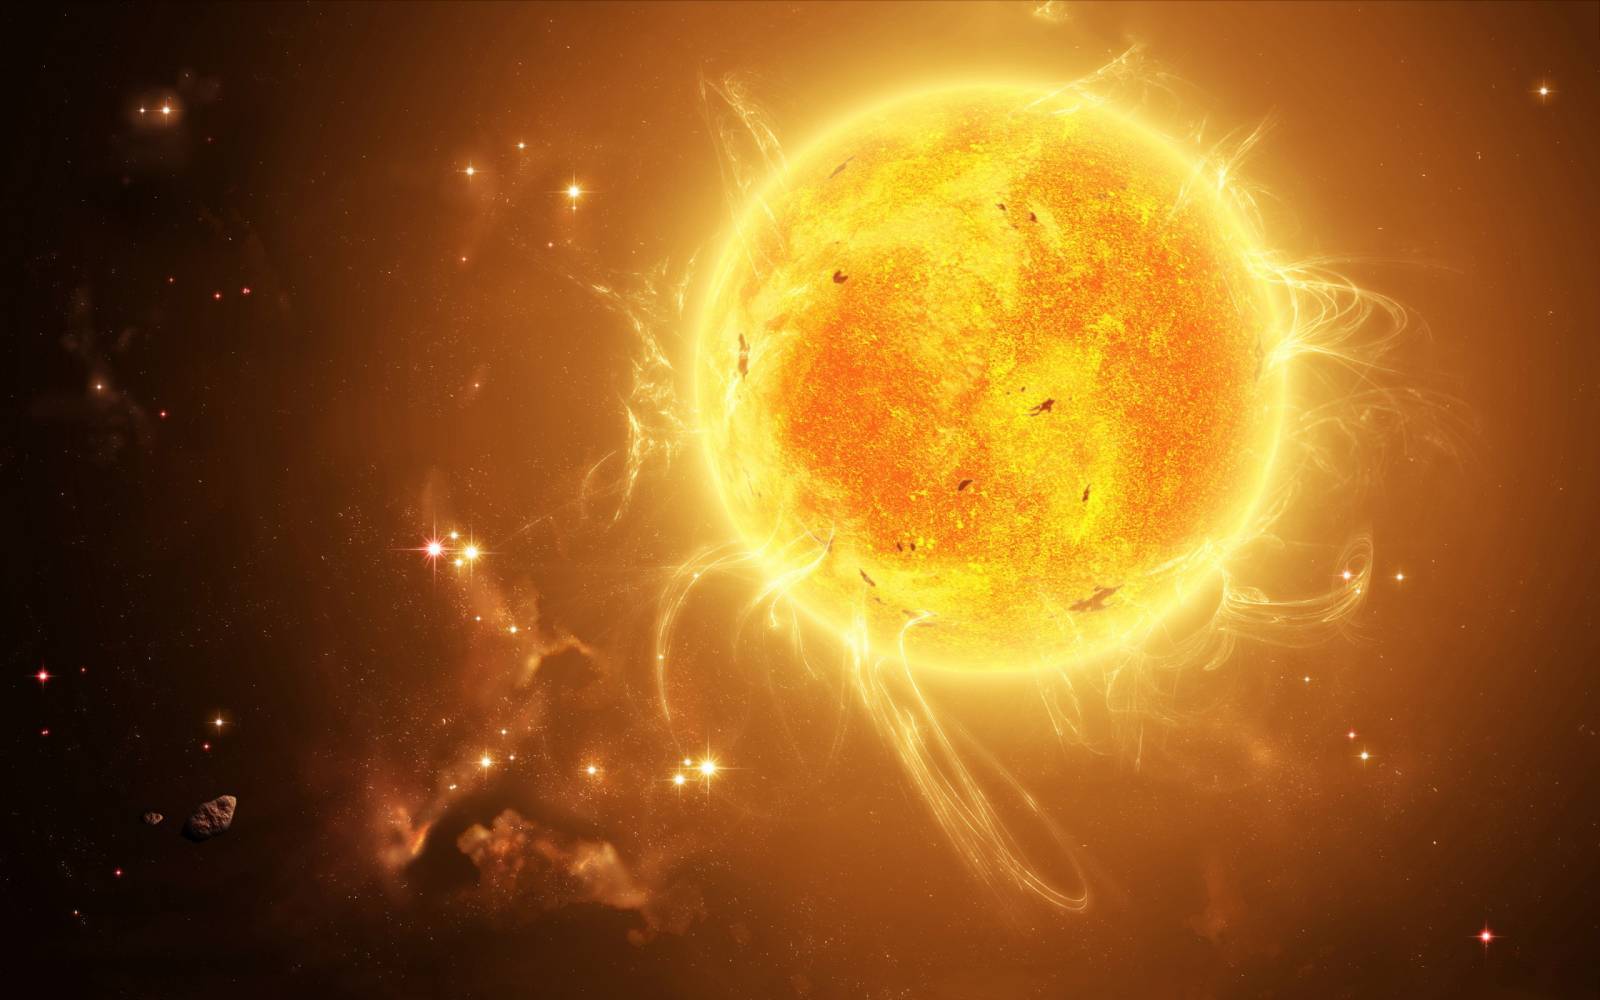 Aurinko. Upea kuva NASAsta, joka järkytti koko maapallon